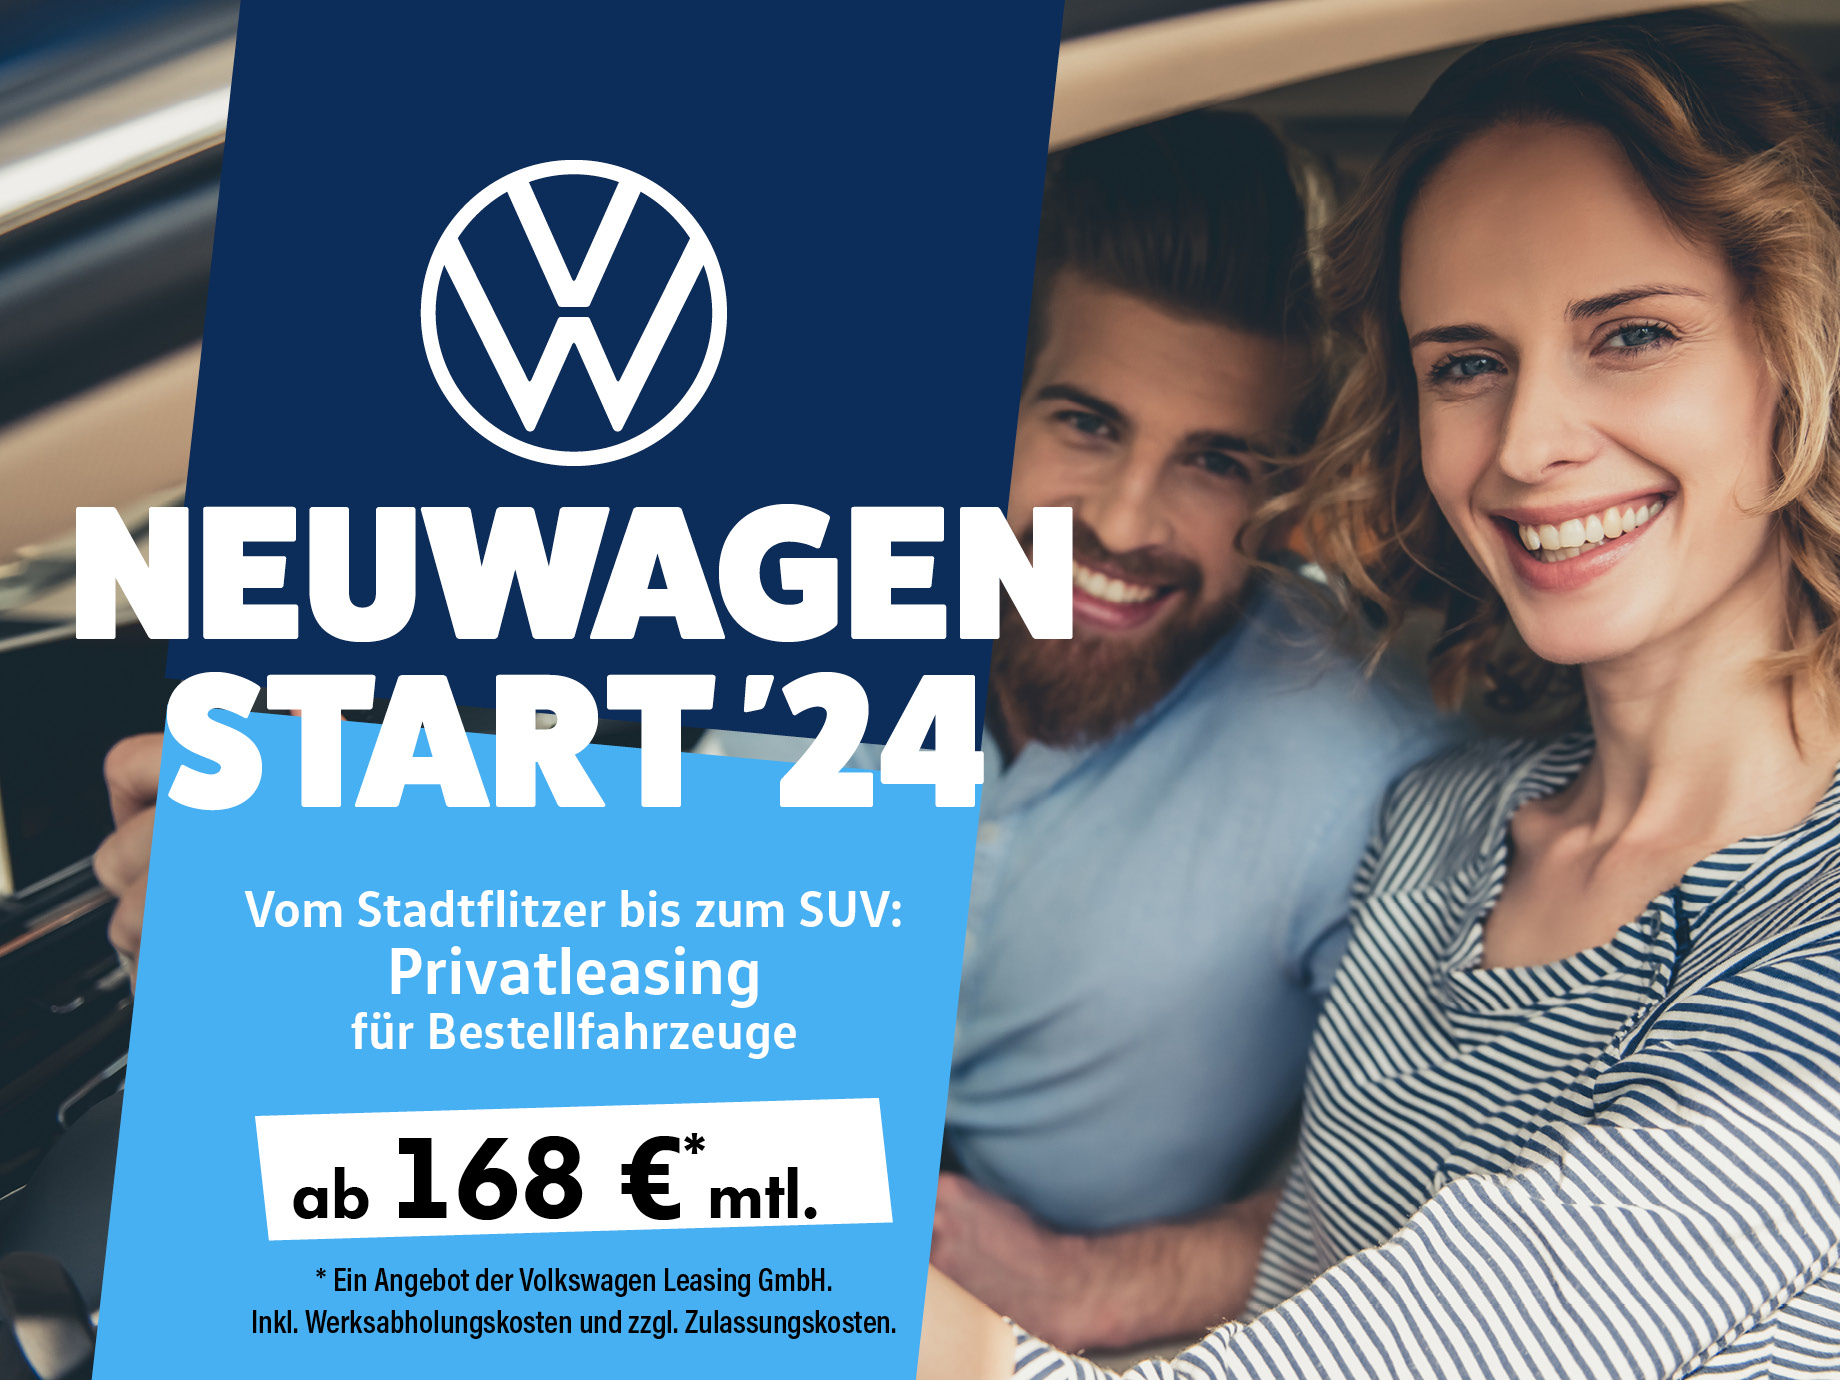 Die besten Neujahrangebote für Privatkunden finden Sie bei POTTHOFF – VW Neuwagen ab 168,- € leasen!